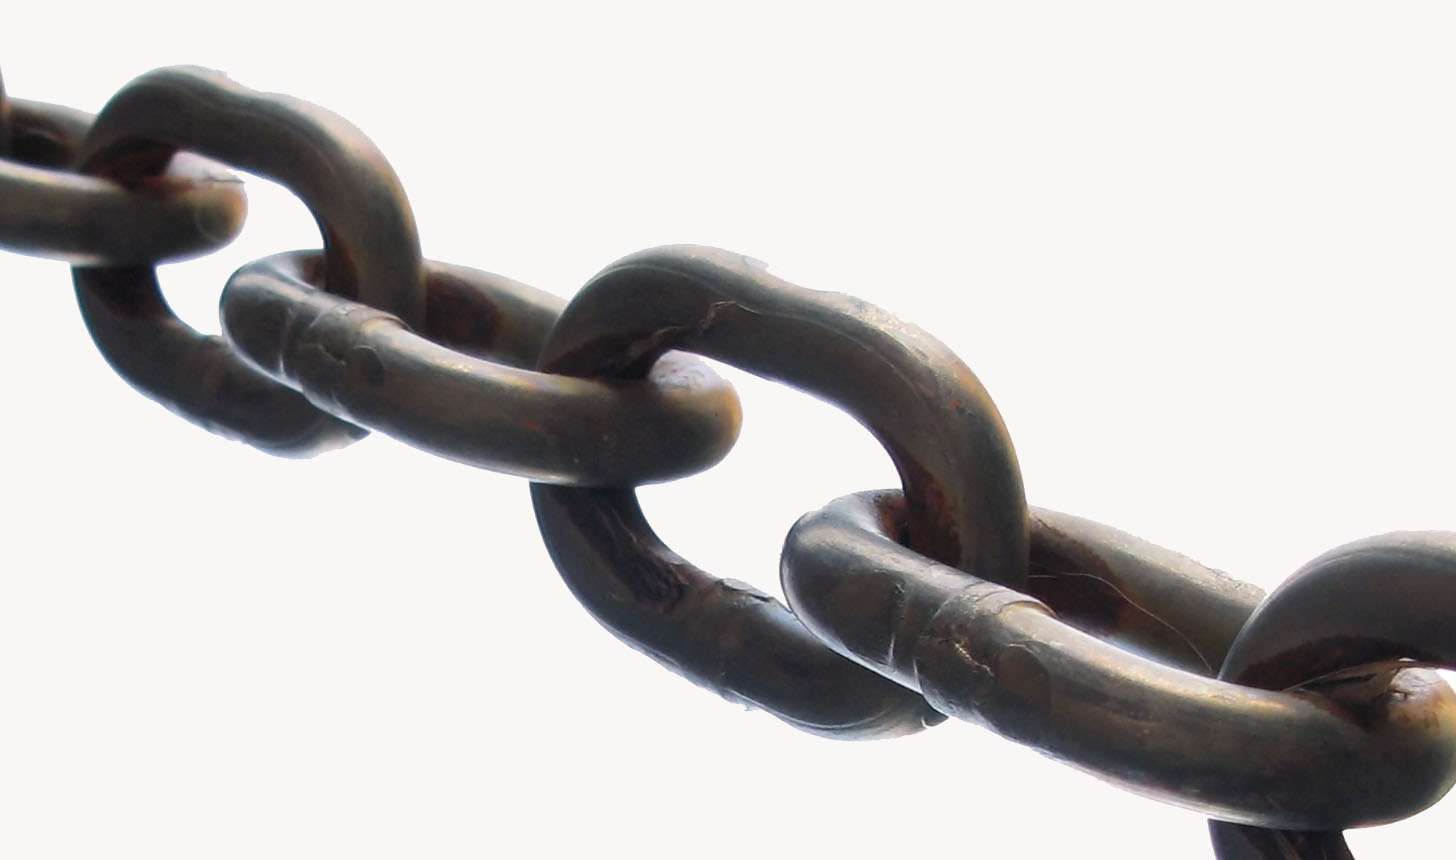 chain-links